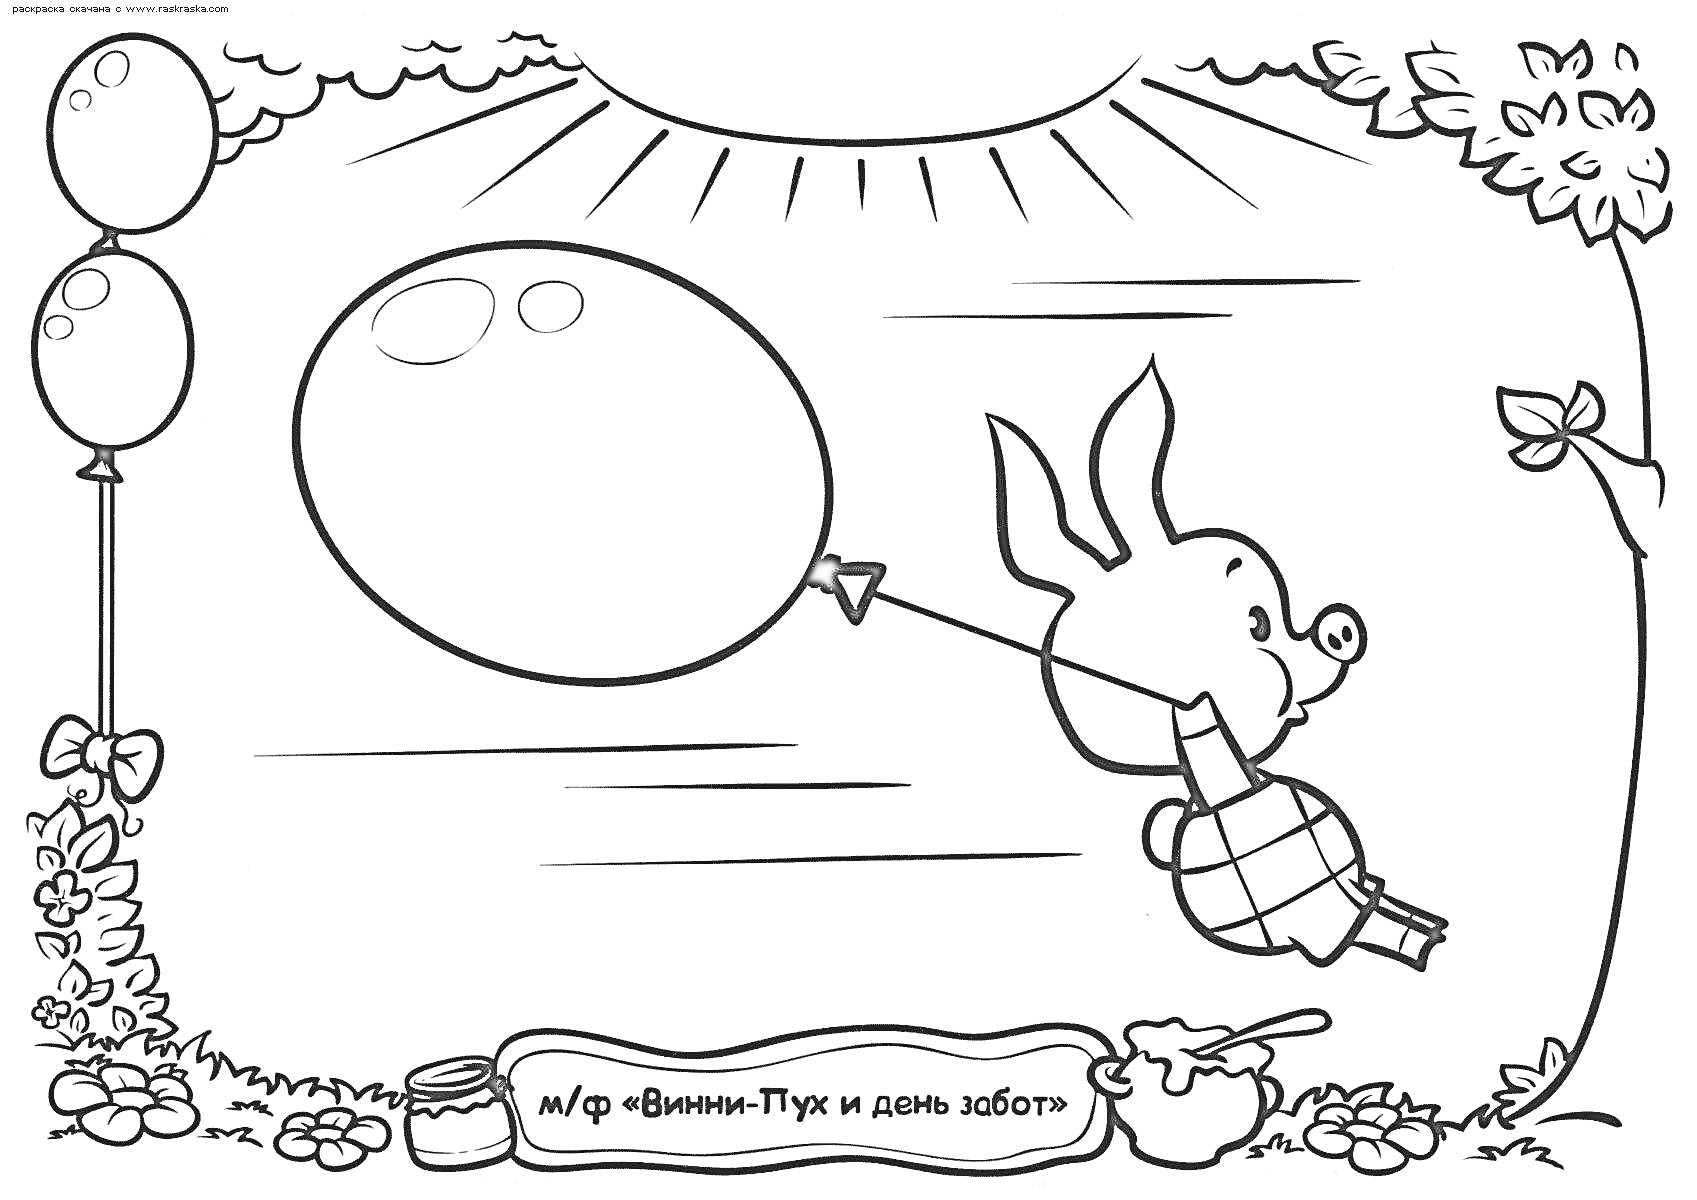 Пятачок летает с воздушным шаром на фоне солнца, цветов и двух воздушных шаров